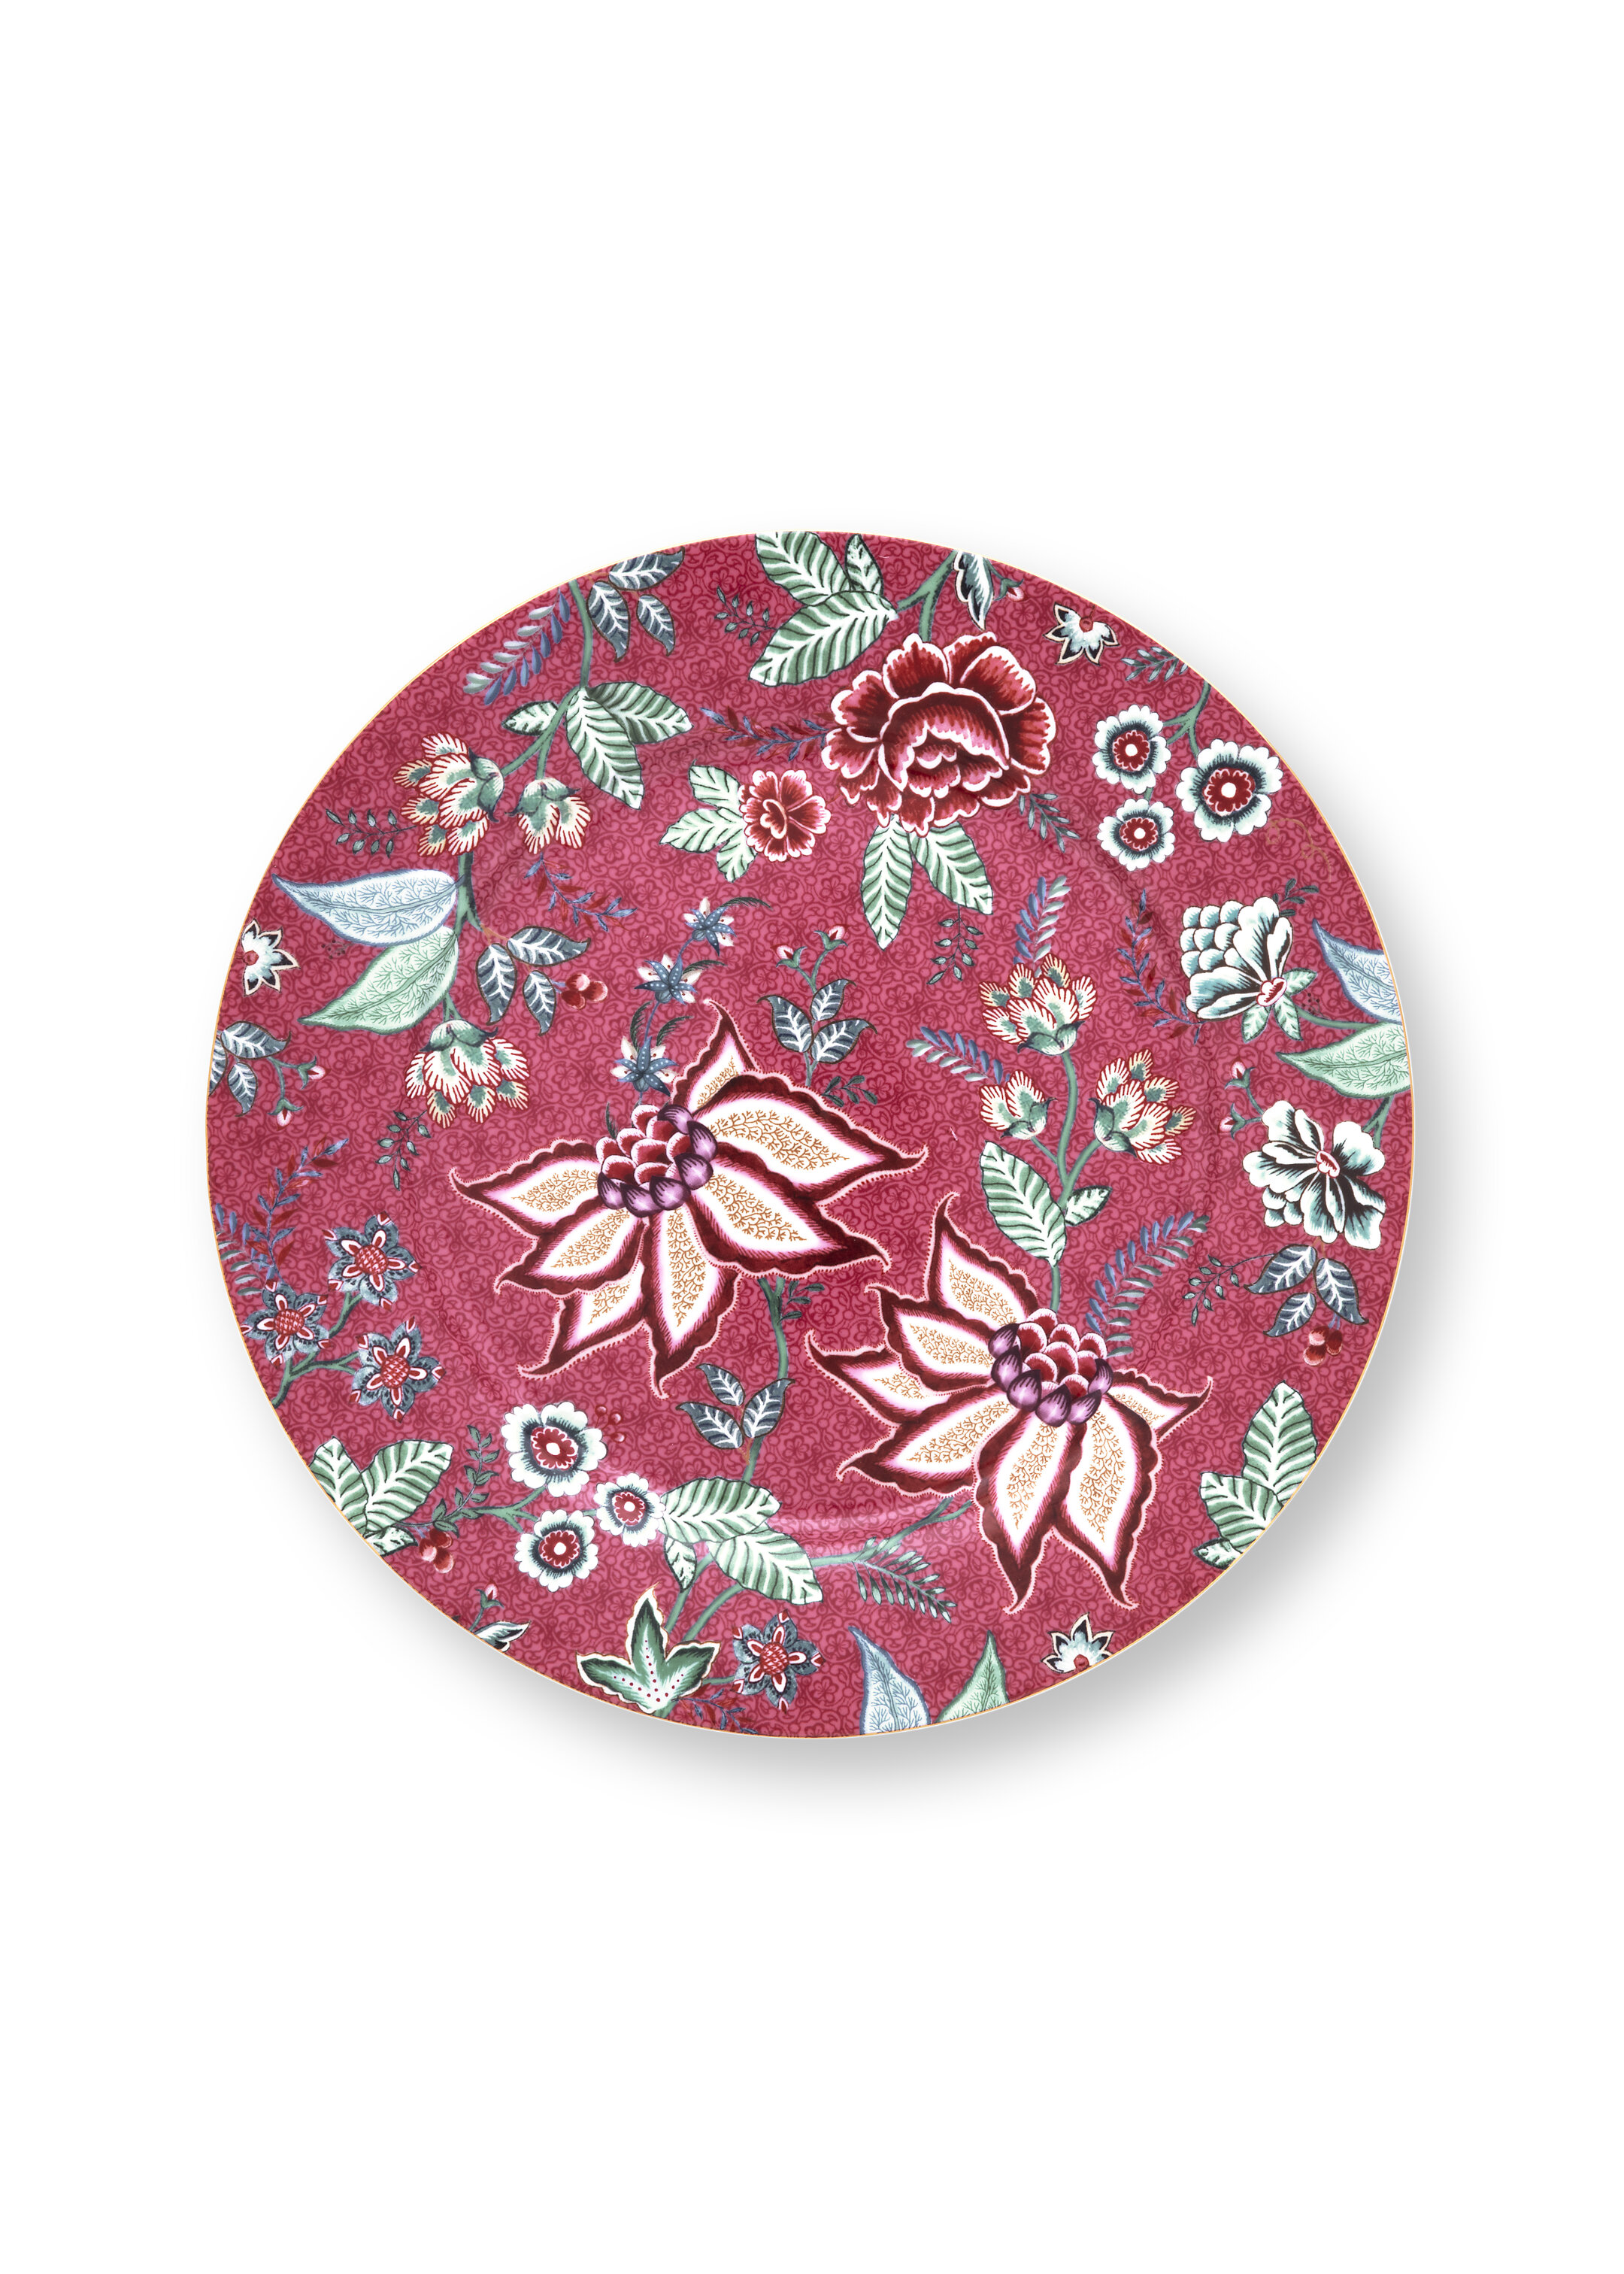 Plate Flower Festival Dark Pink 32cm Gift